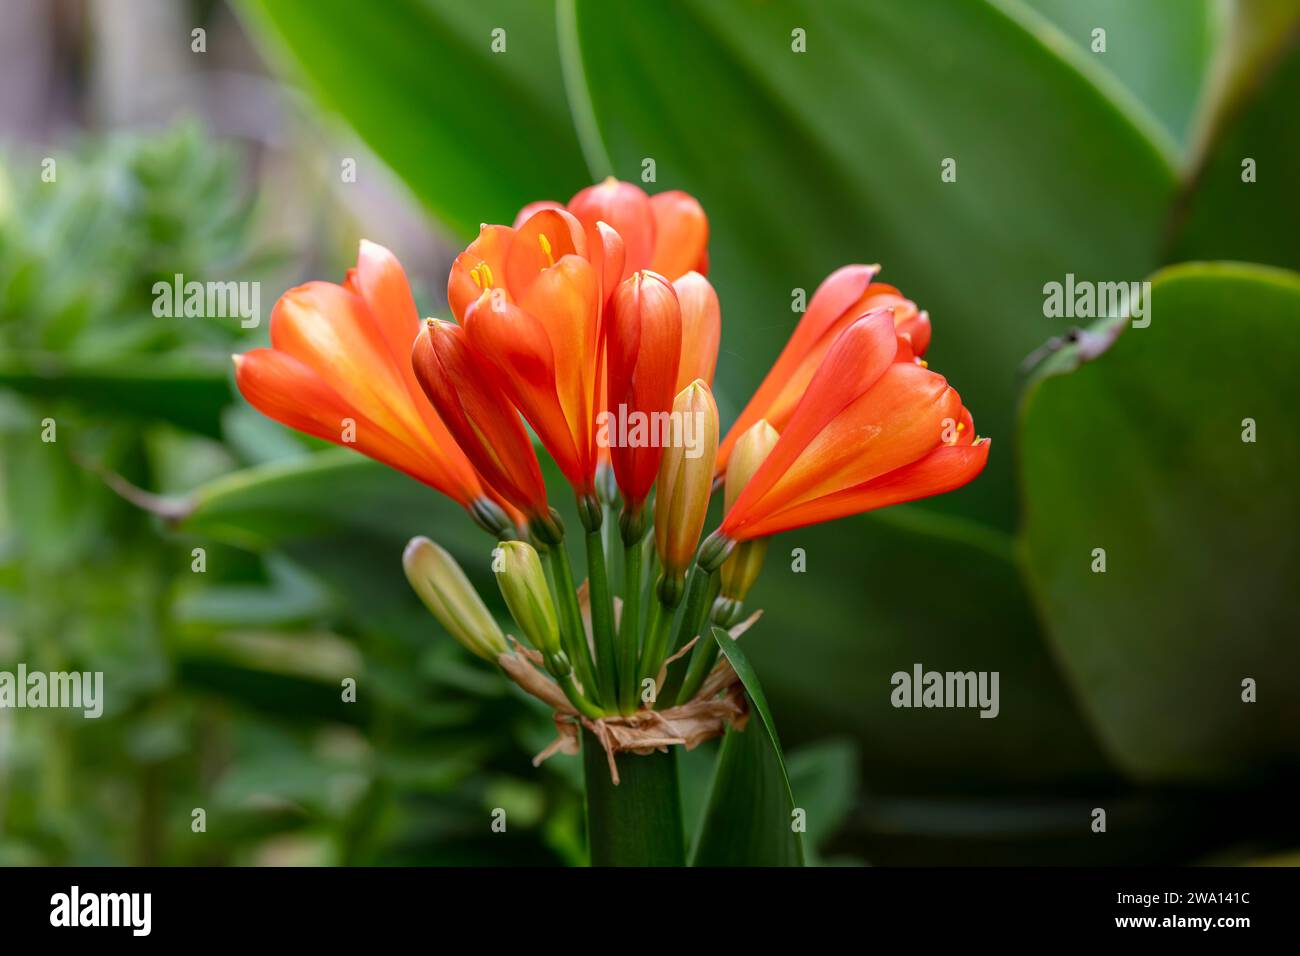 Fotografia di un fiore di Clivia Kaffir rosso ibrido belga in fiore in un giardino domestico nelle Blue Mountains in Australia Foto Stock